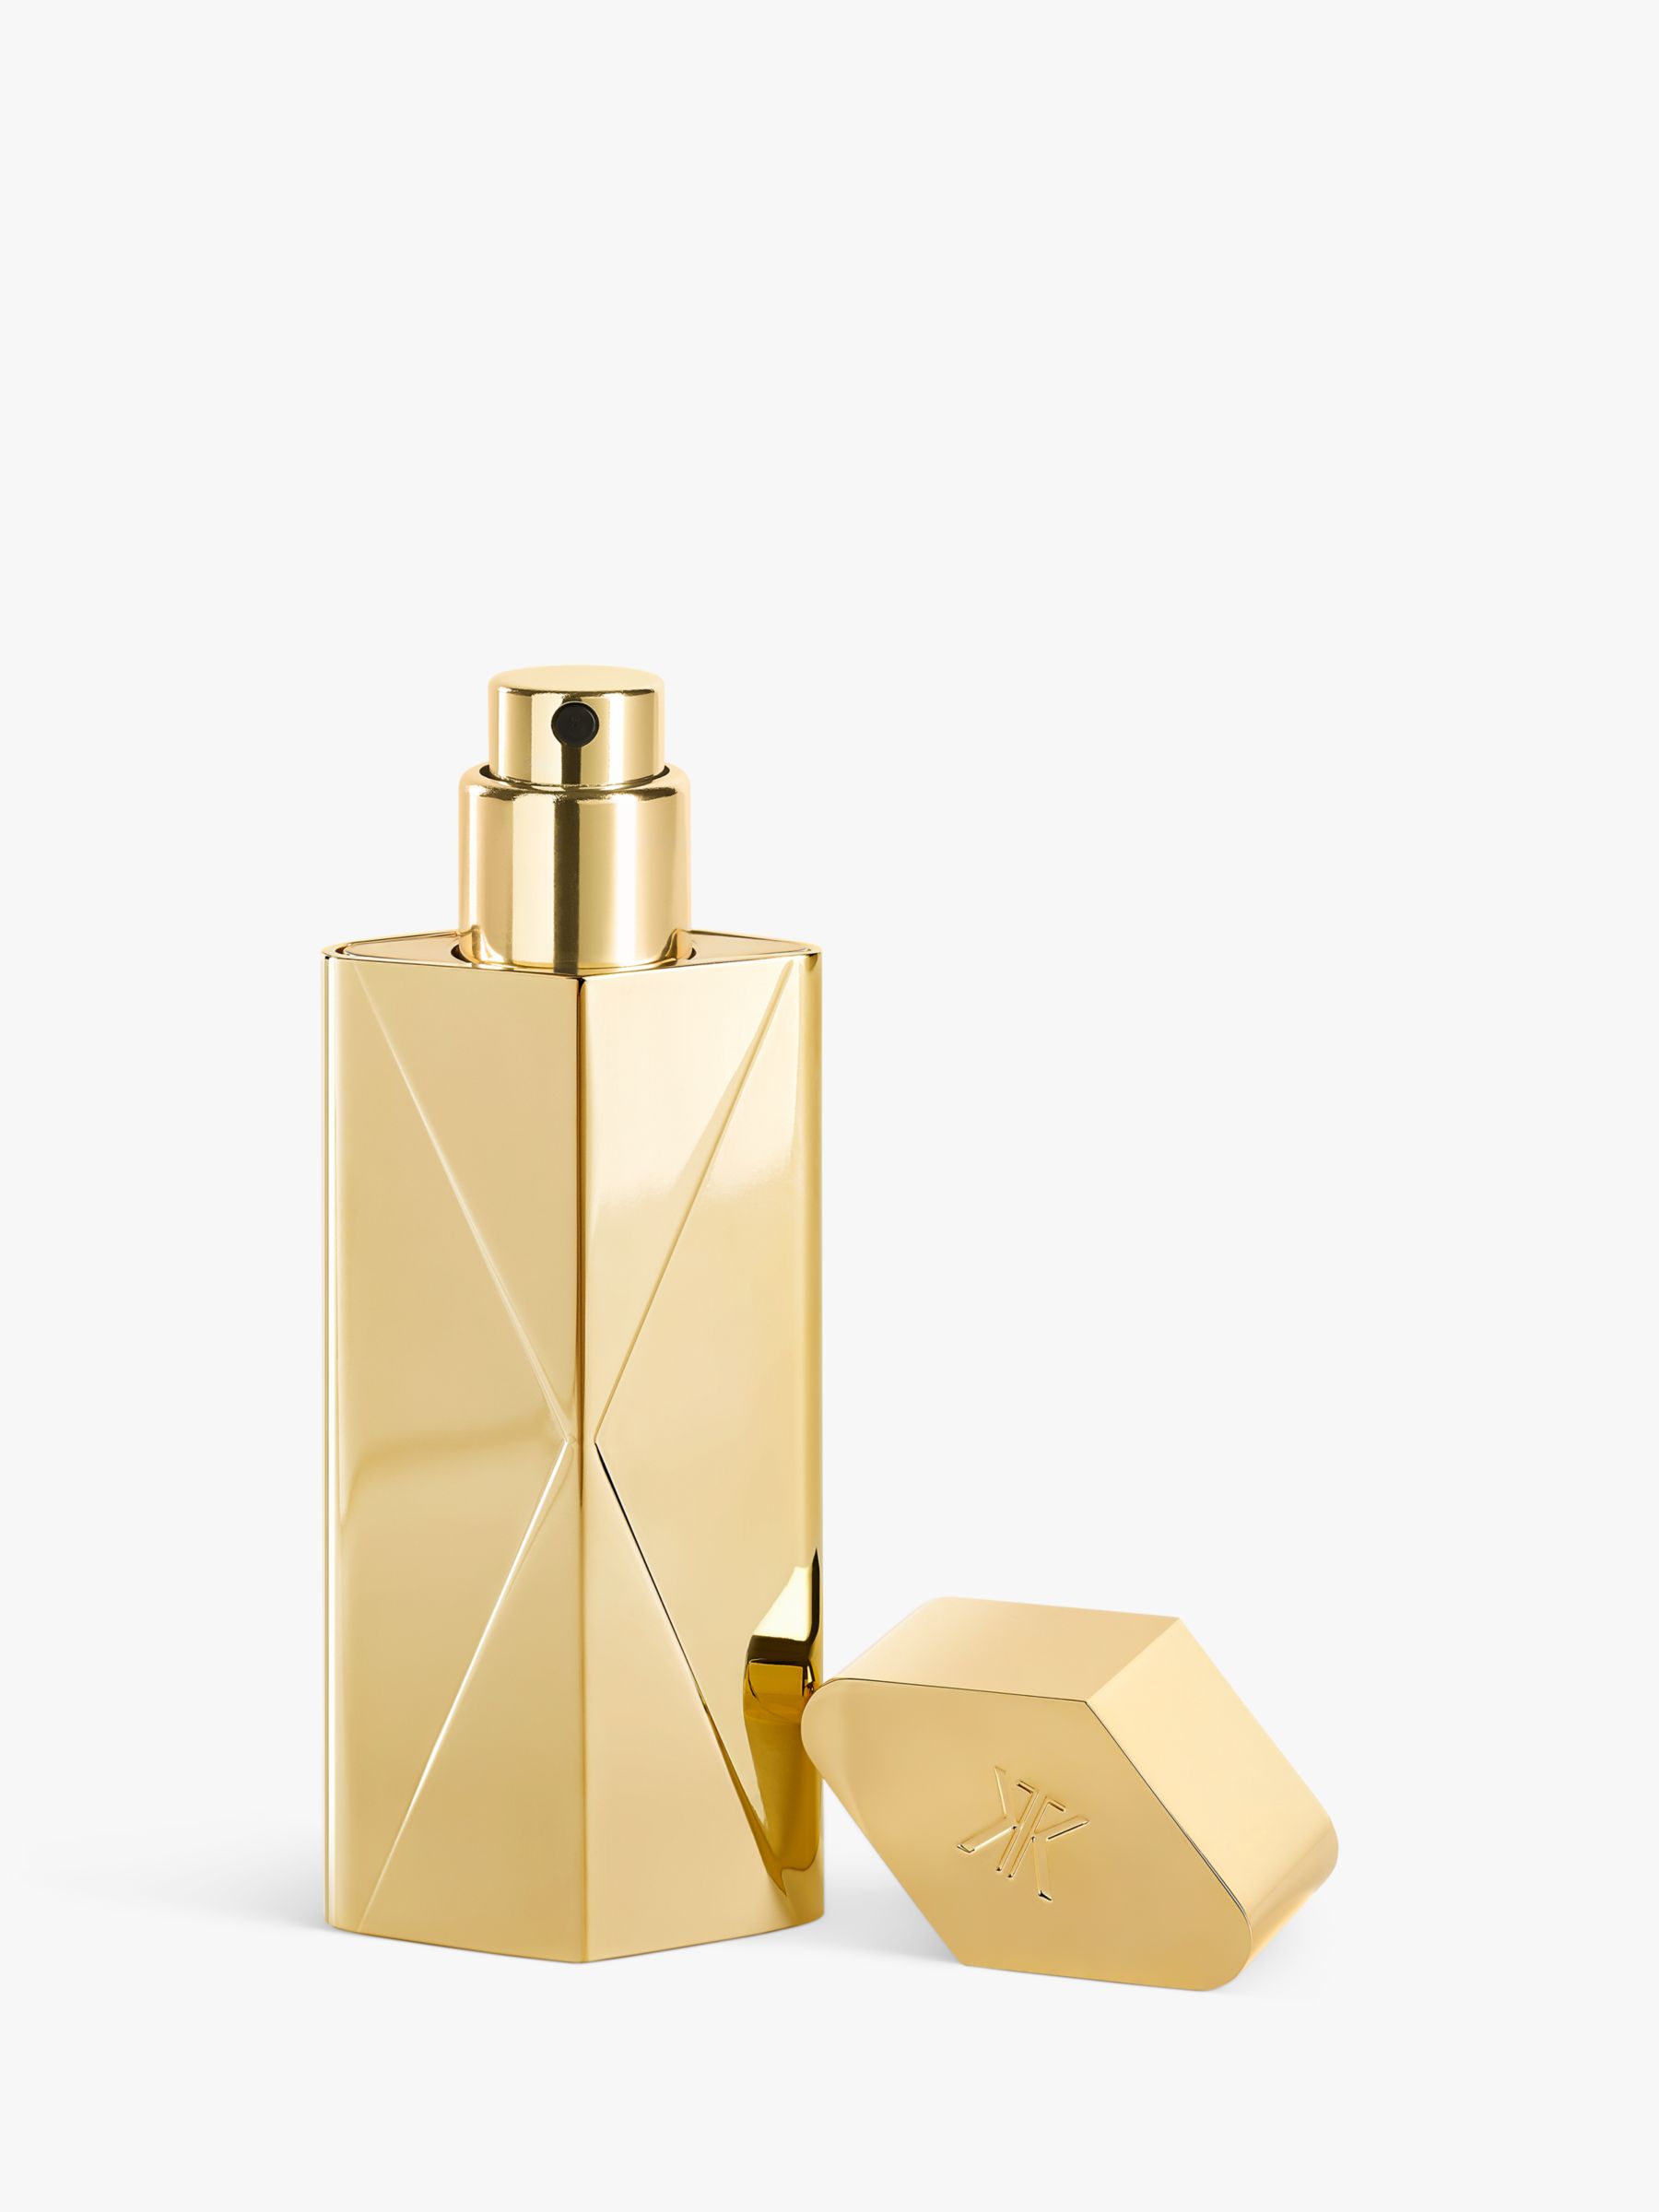 Maison Francis Kurkdjian Baccarat Rouge 540 Extrait de Parfum - Set